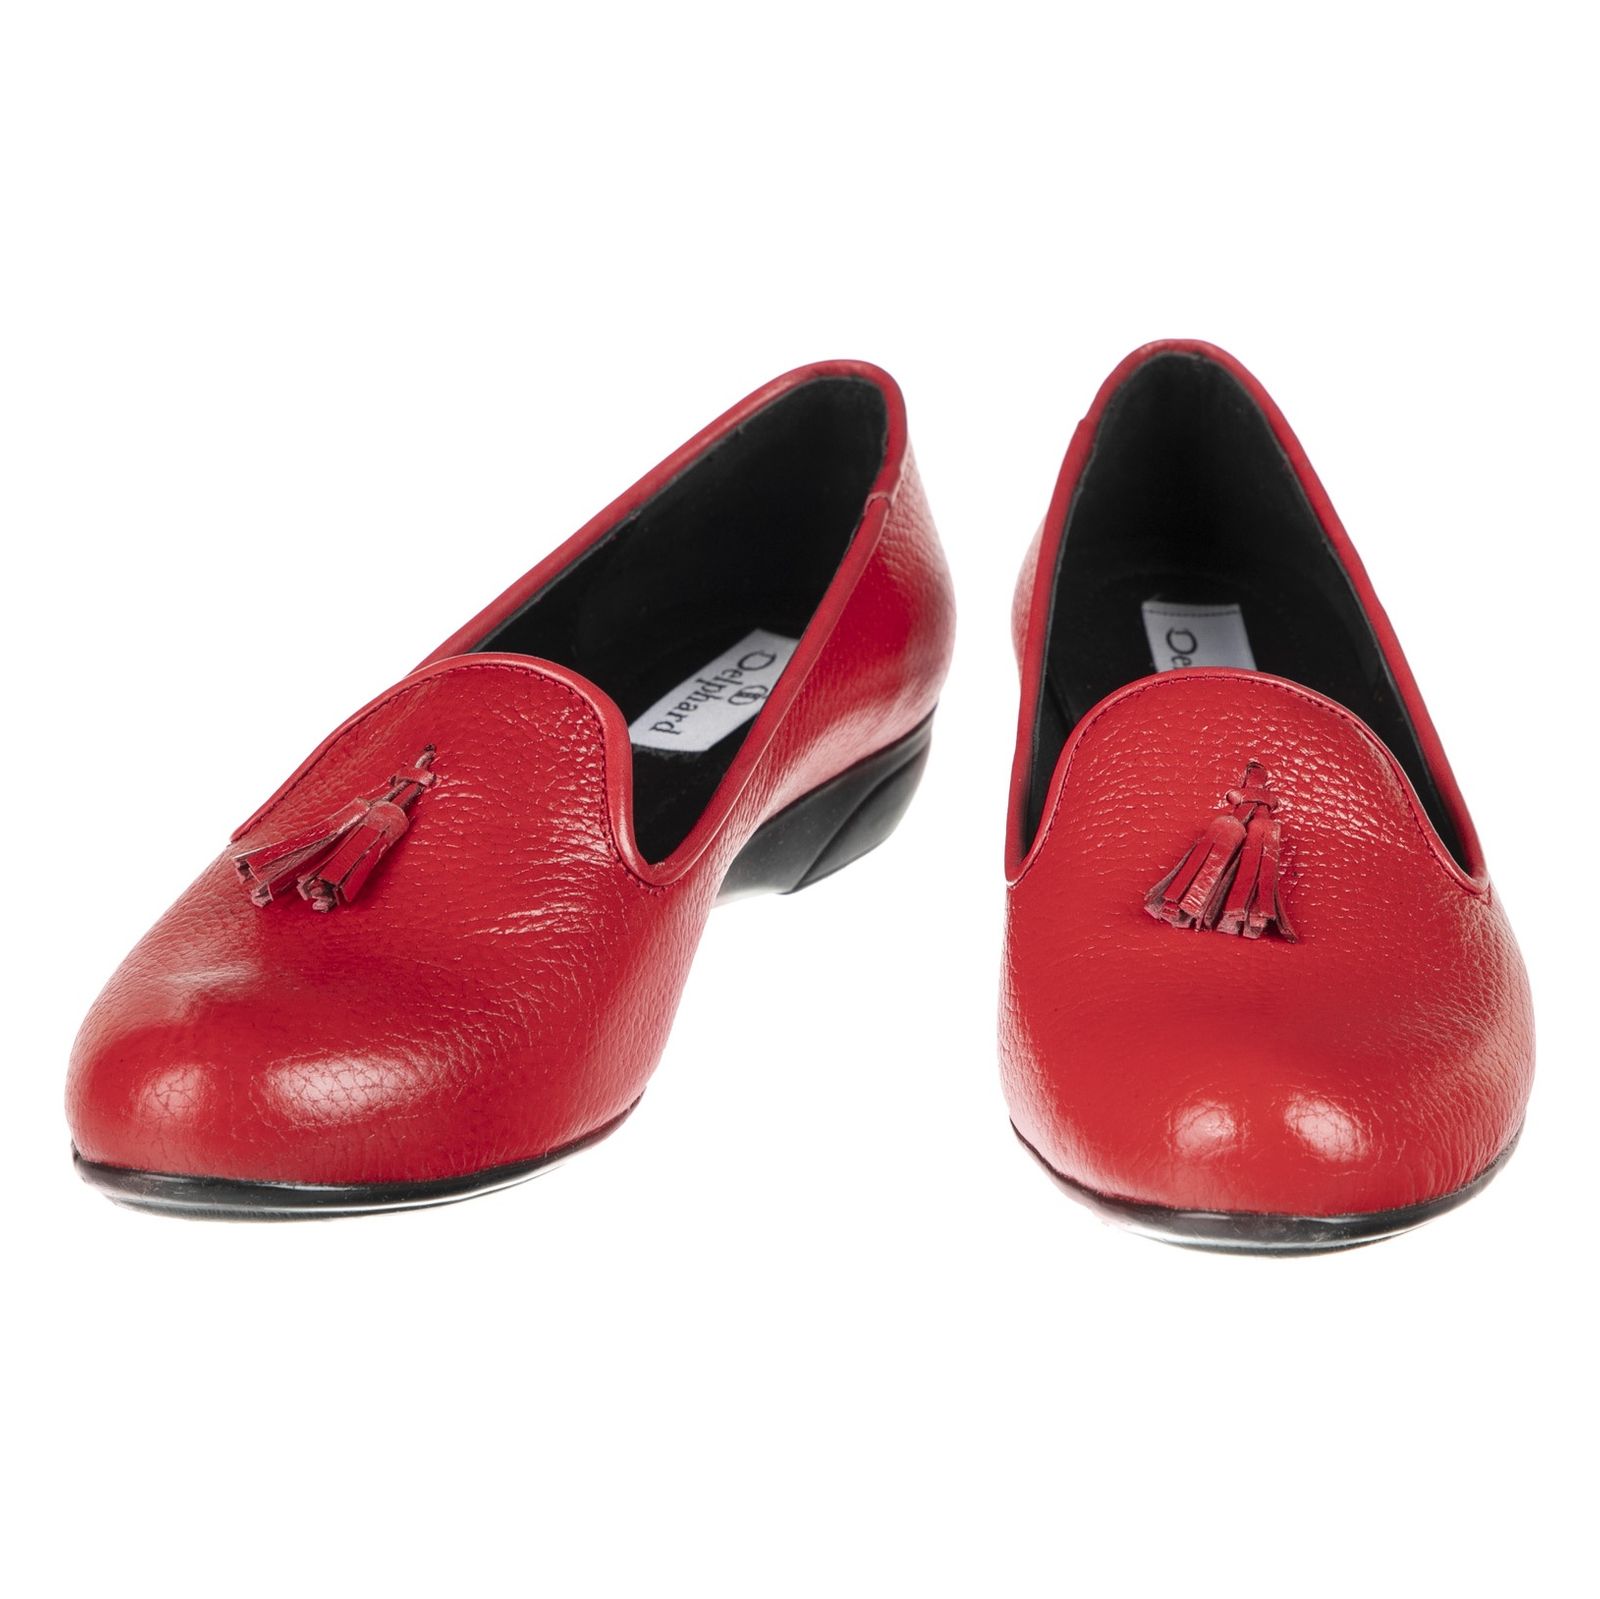 کفش زنانه دلفارد مدل 5183A500-102 - قرمز - 4